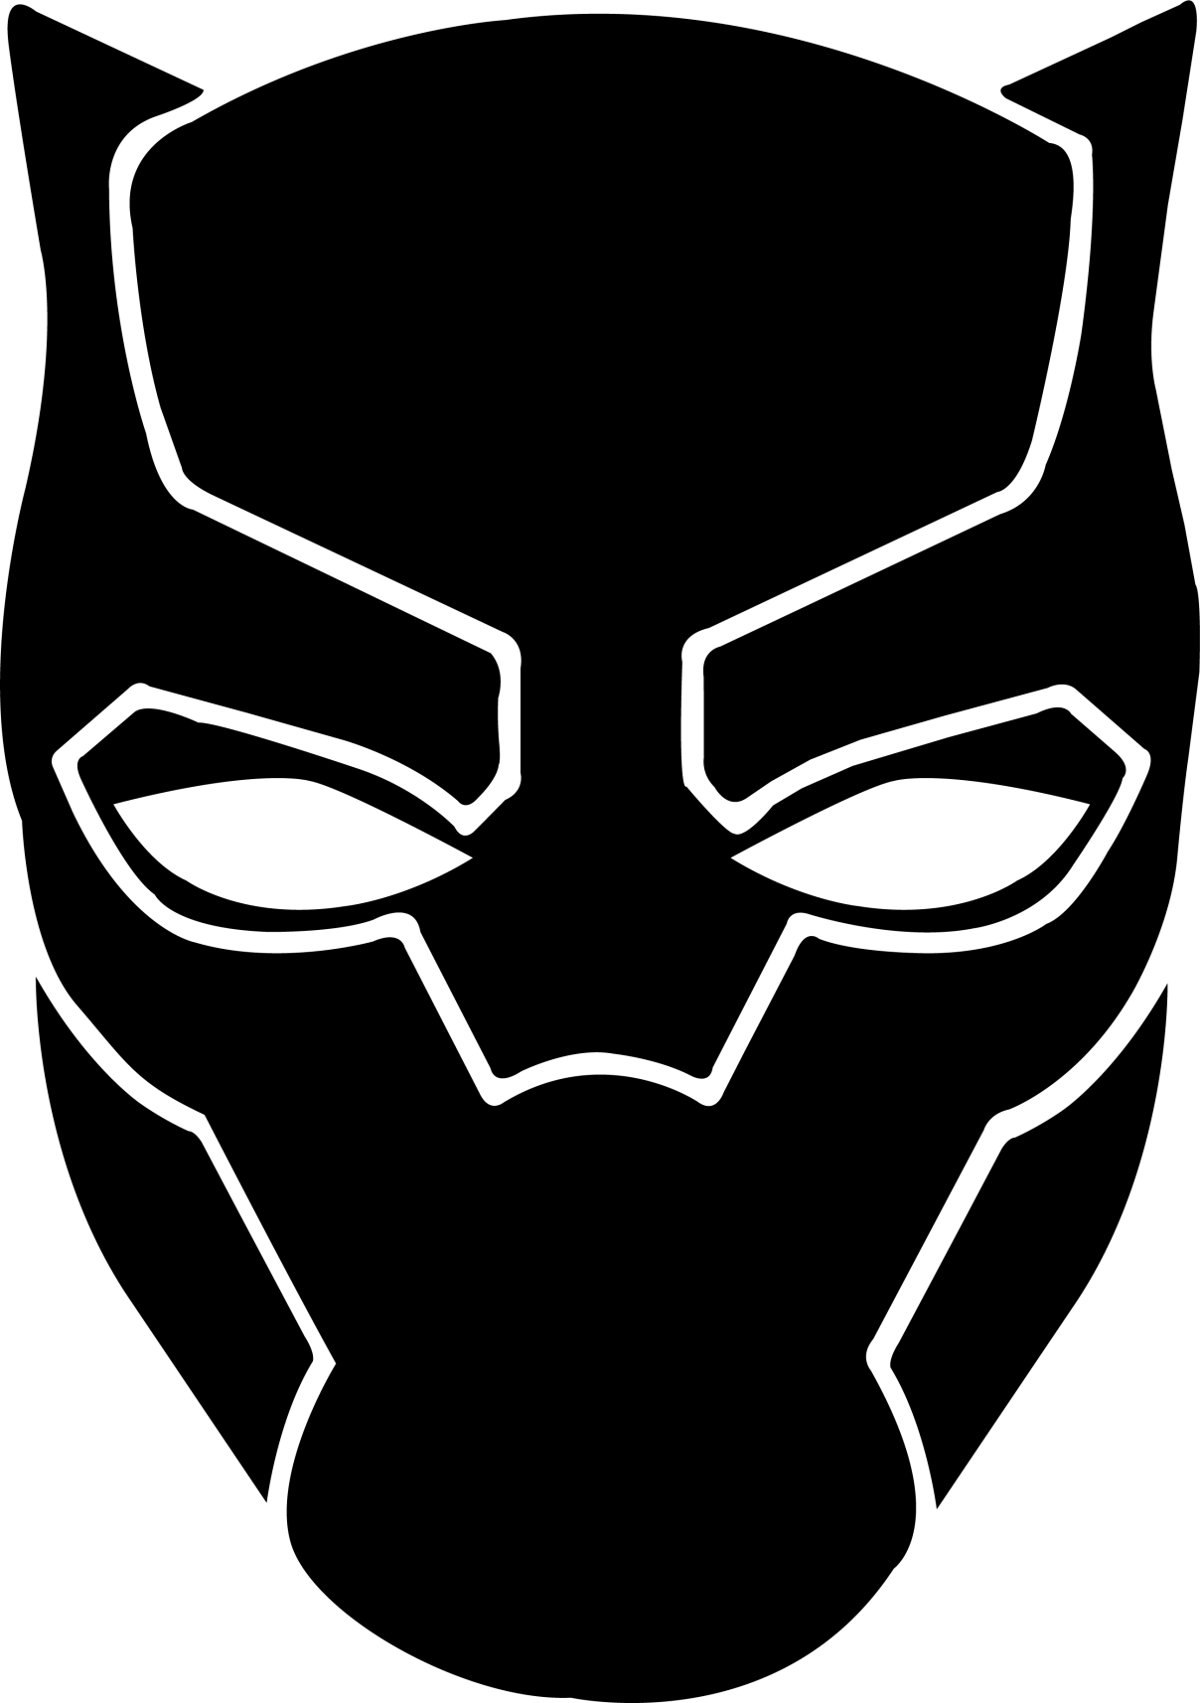 Black Panther Mask Transparent Background